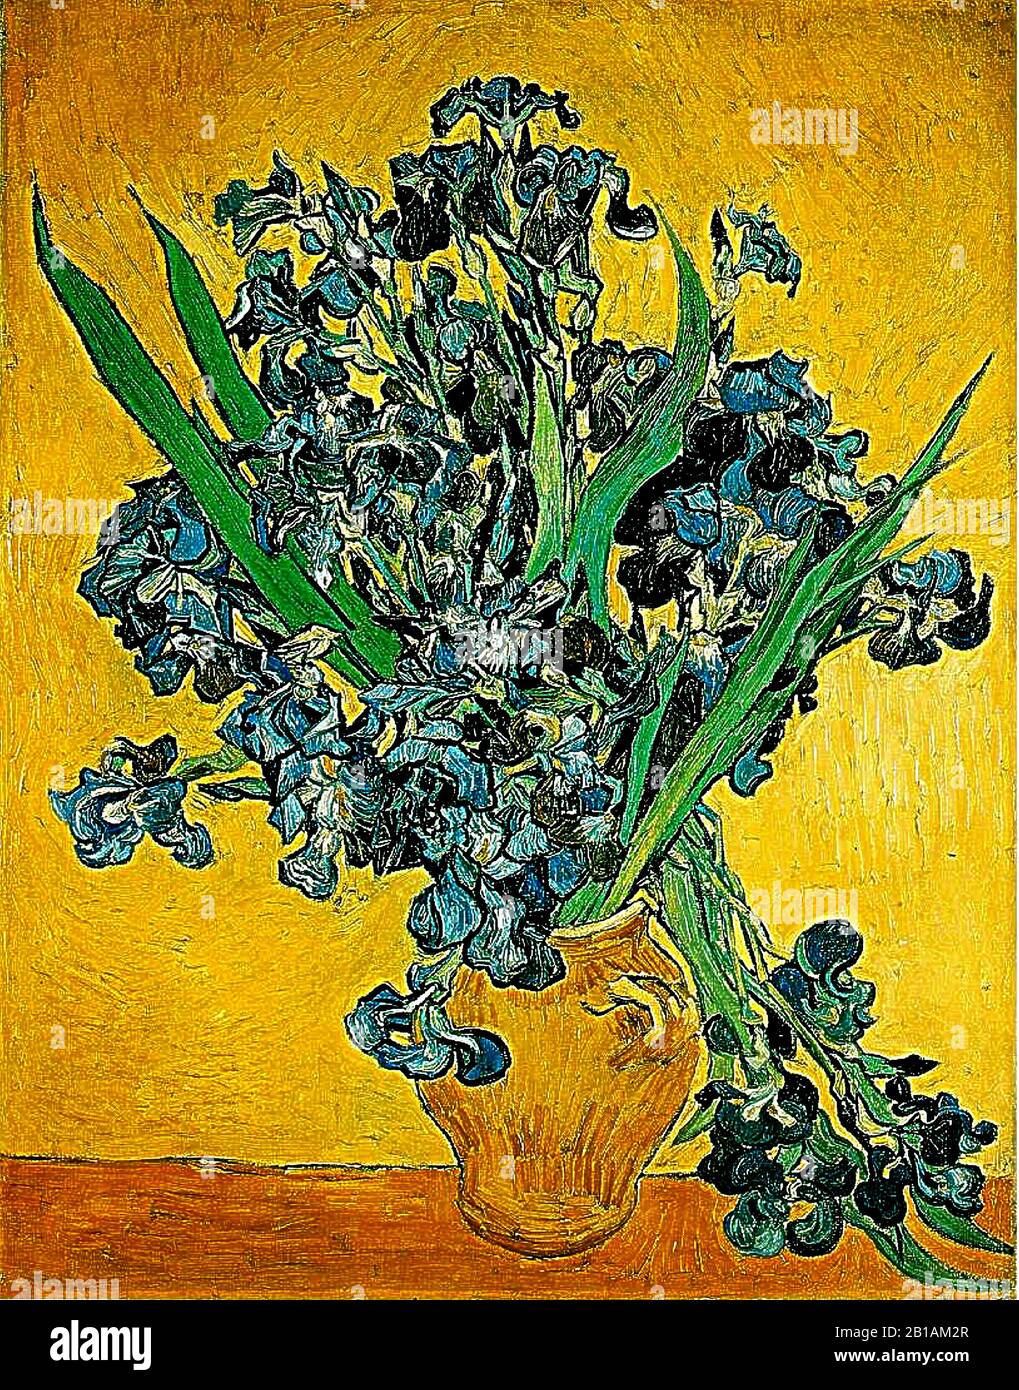 Irizes 1890 Gemälde von Vincent van Gogh - Sehr hohe Auflösung und Qualitätsbild Stockfoto